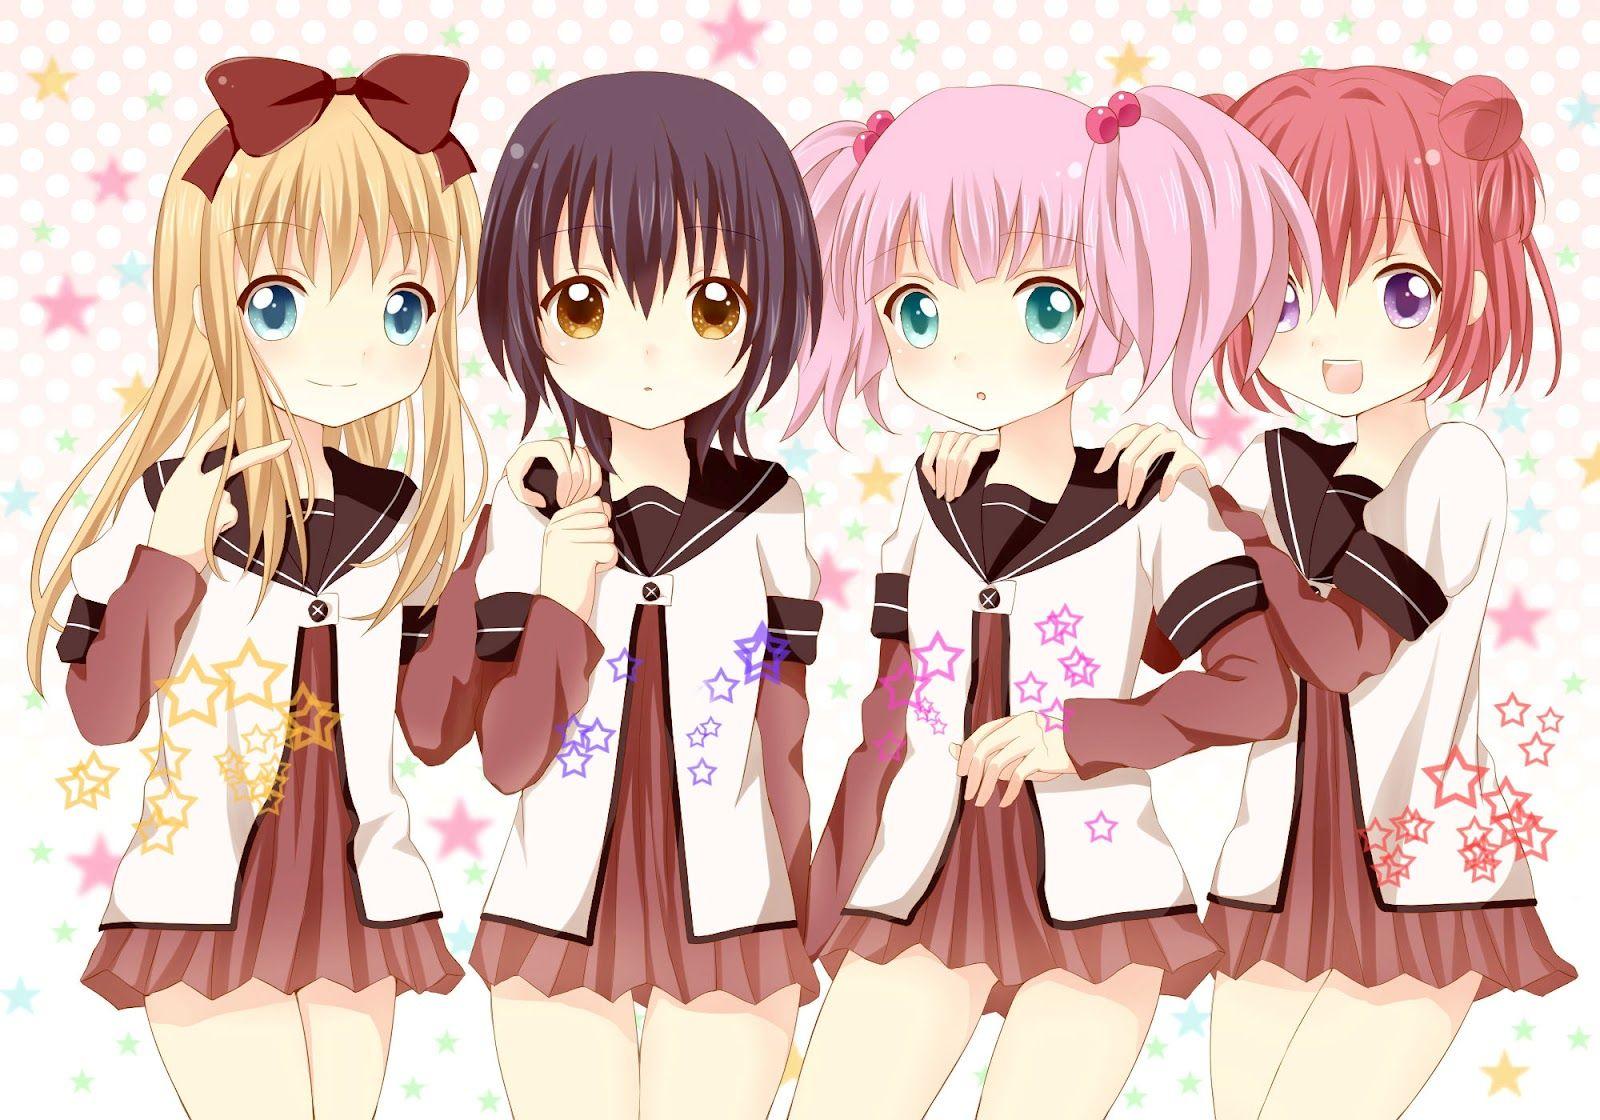 Download wallpaper 1280x960 school dress friends anime girls original  standard 43 fullscreen 1280x960 hd background 4178